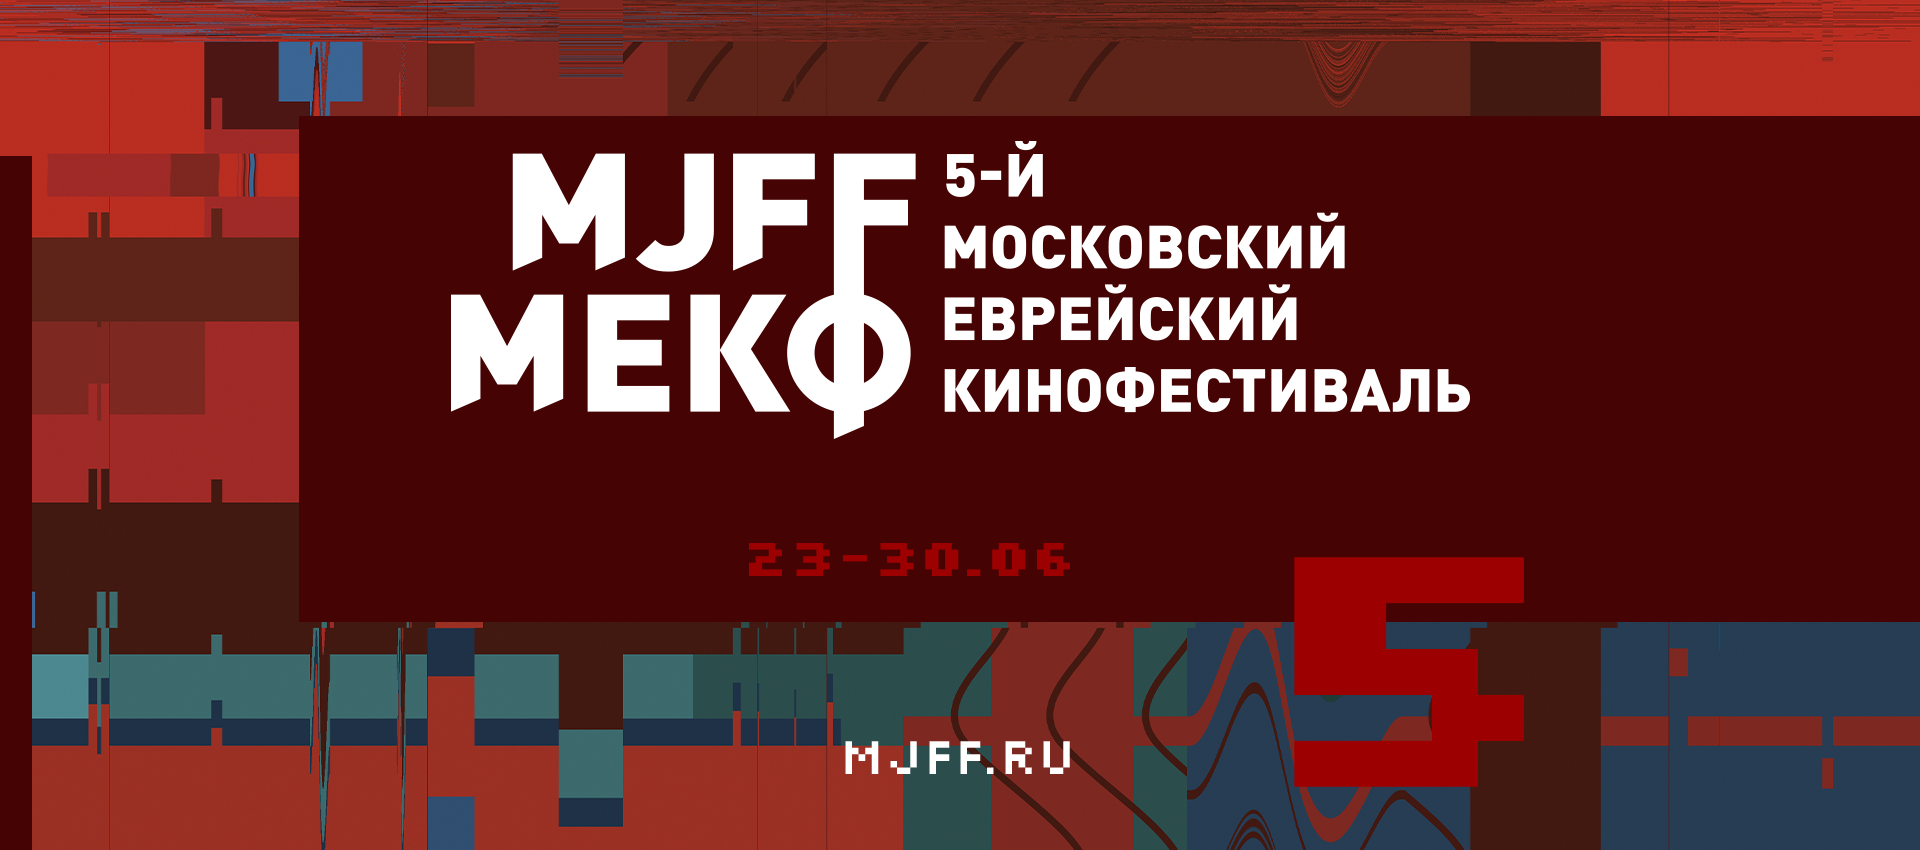 В Москве пройдёт юбилейный 5-й Московский еврейский кинофестиваль